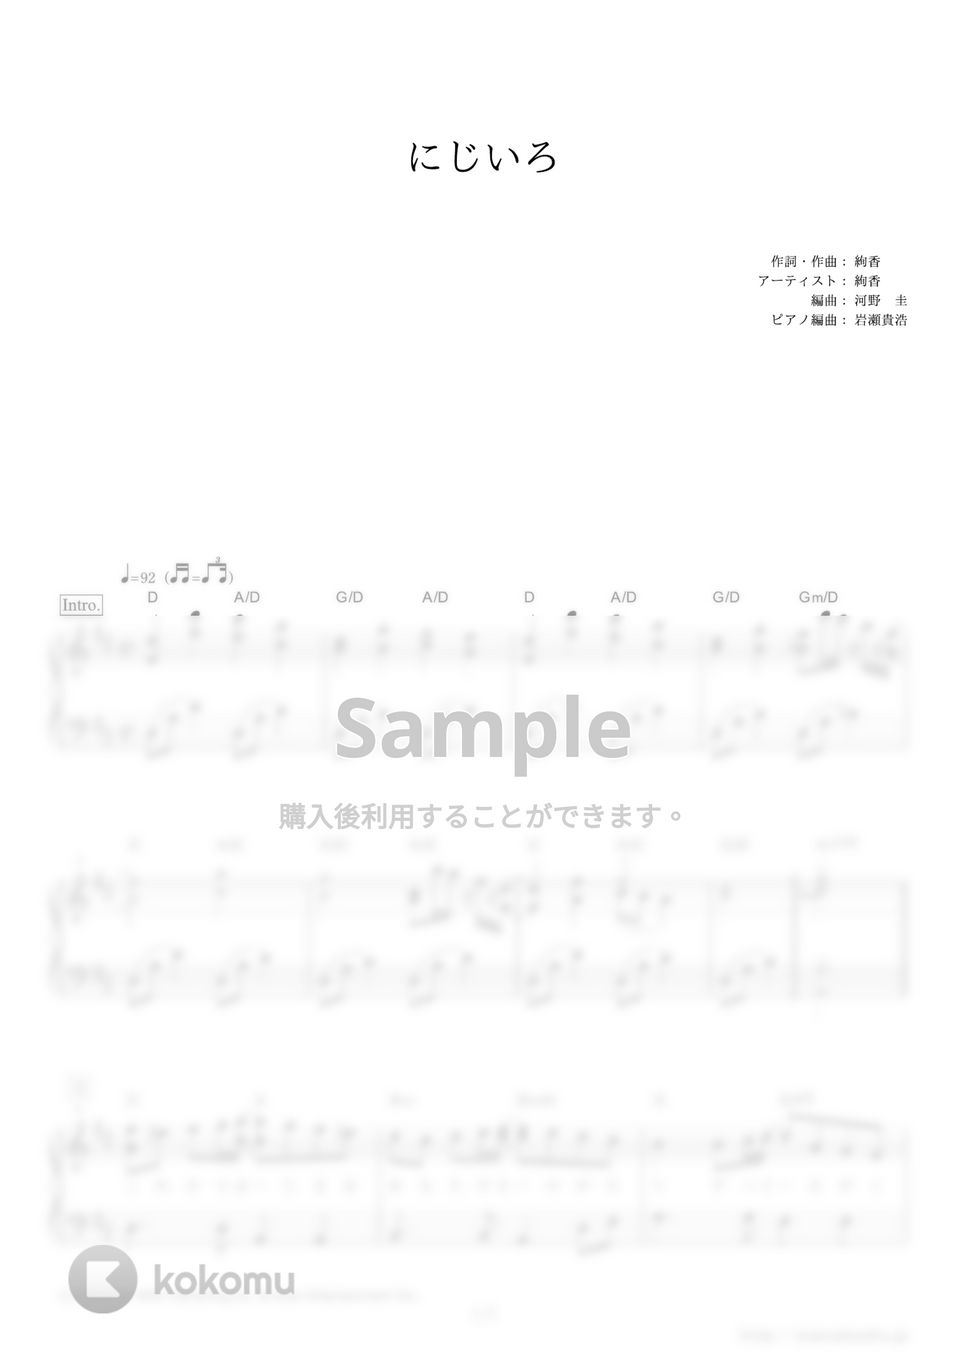 絢香 - にじいろ (NHK連続テレビ小説『花子とアン』主題歌) by ピアノの本棚